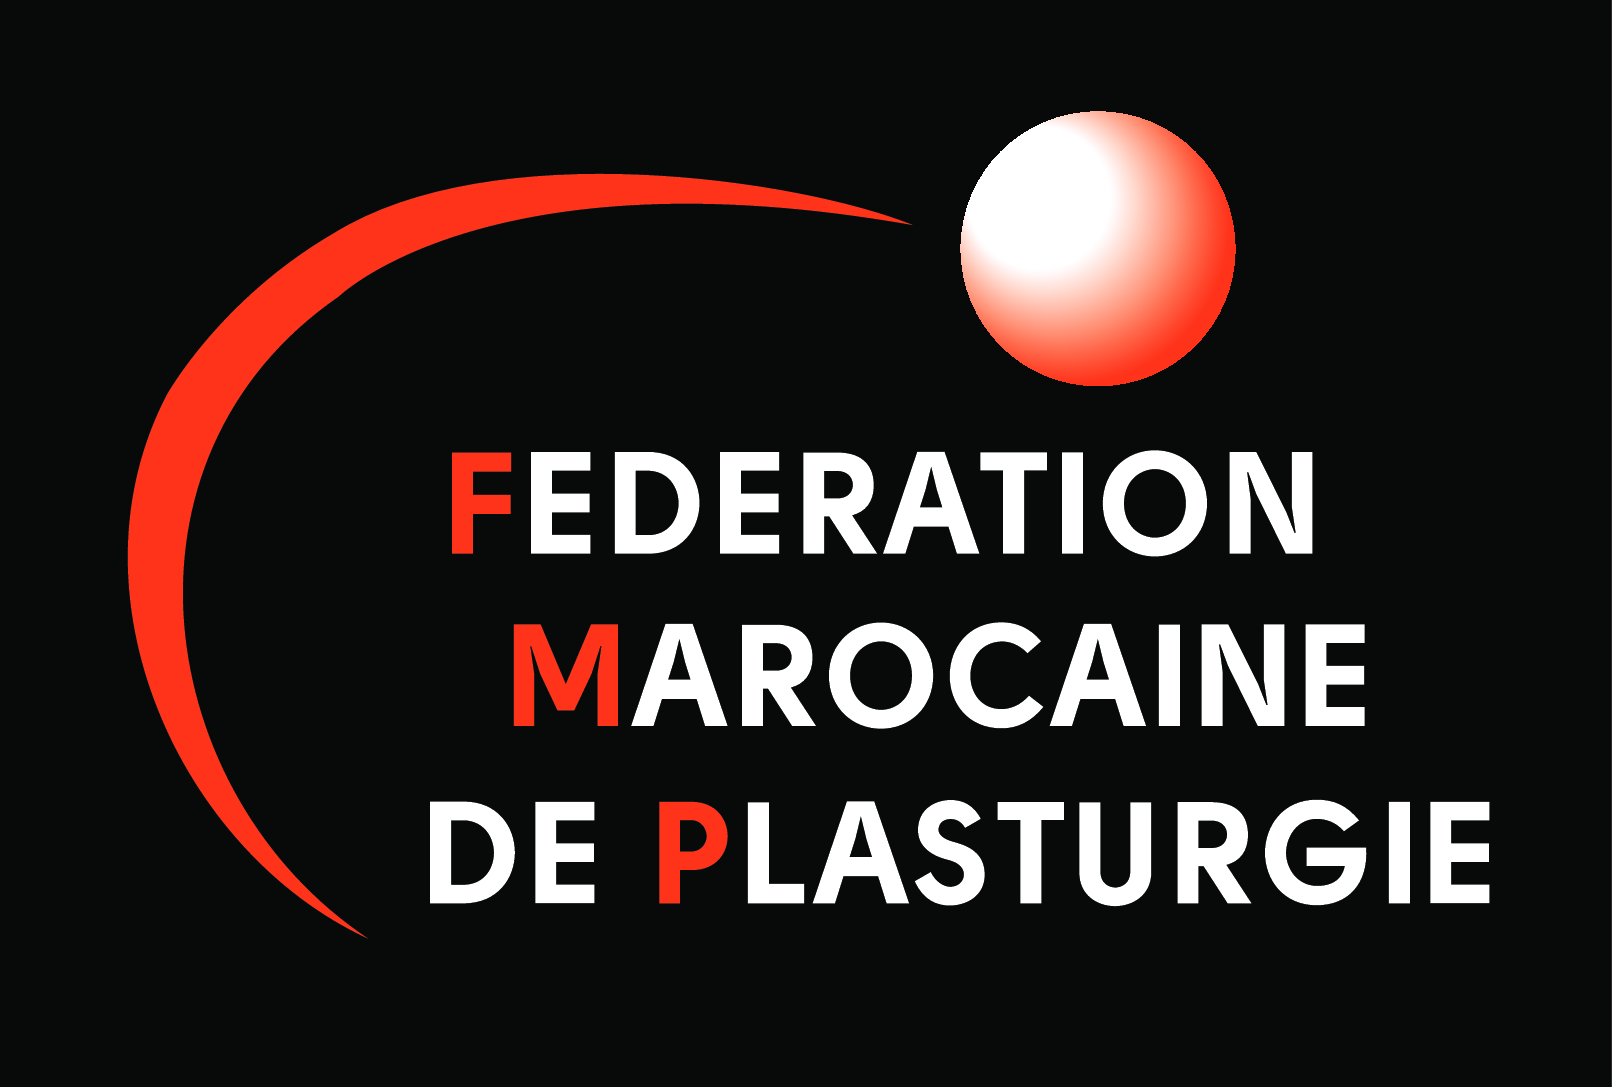 Federation Marocaine de Plasturgie